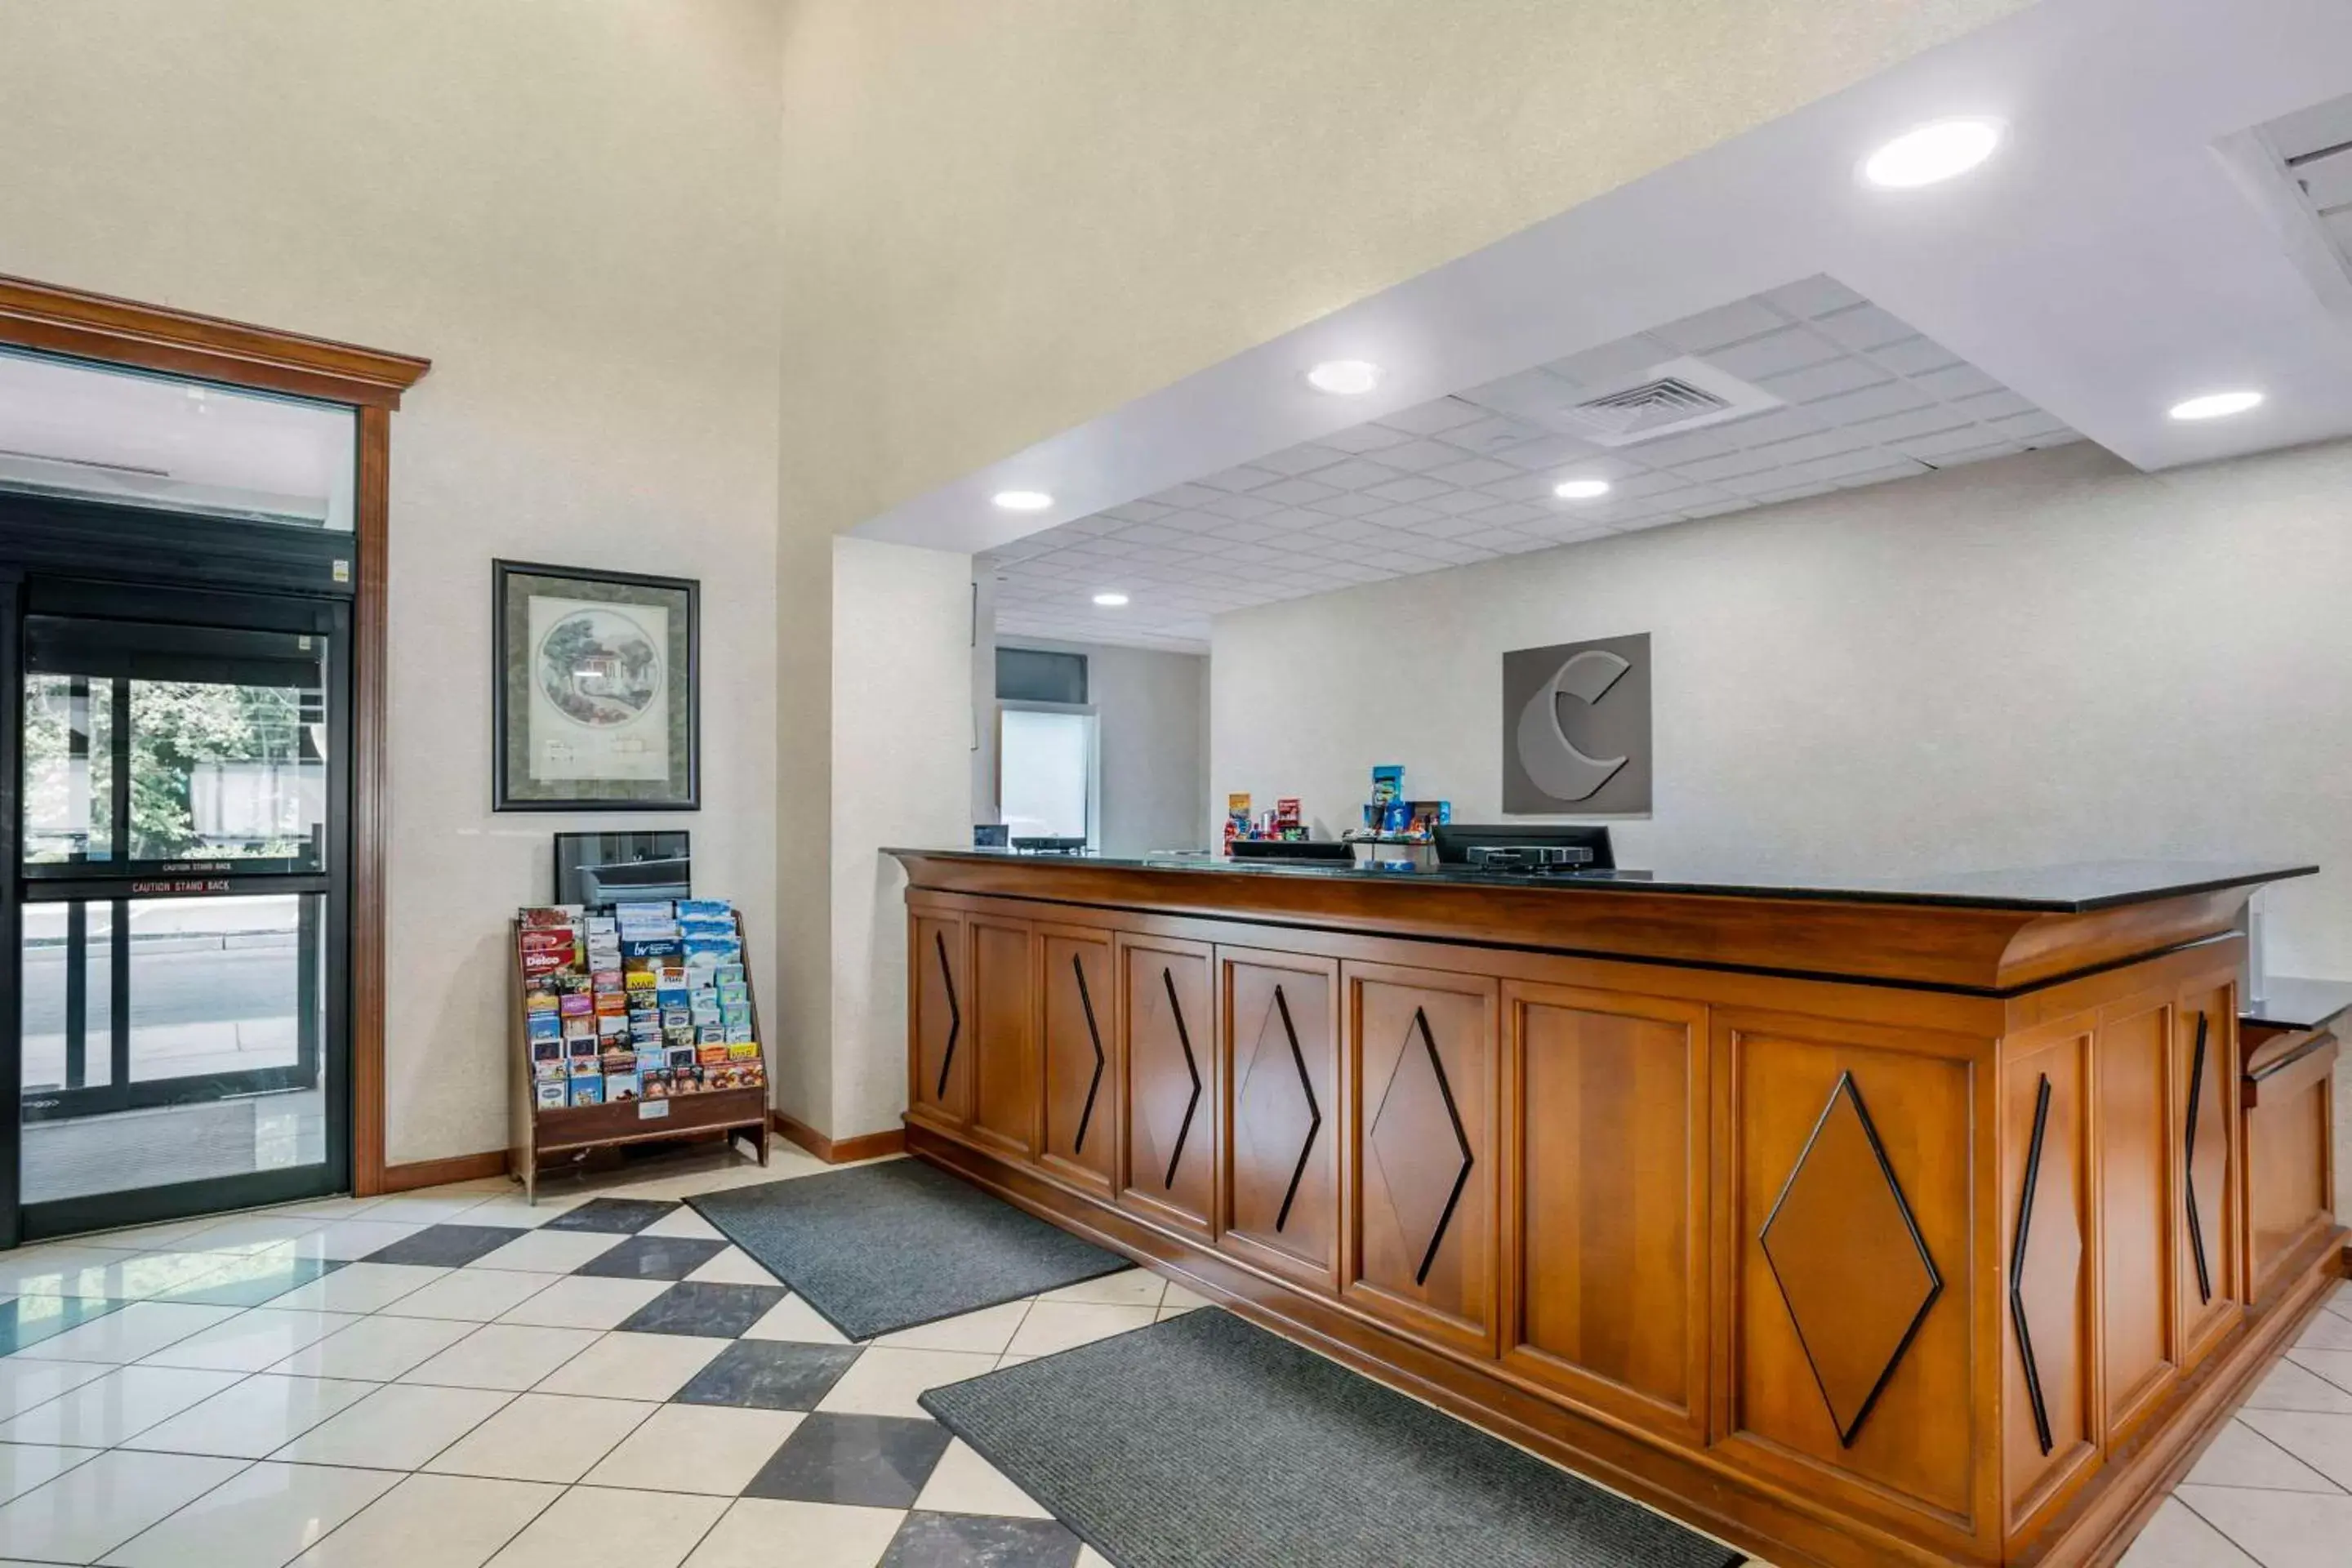 Lobby or reception, Lobby/Reception in Comfort Inn & Suites Voorhees - Mt Laurel